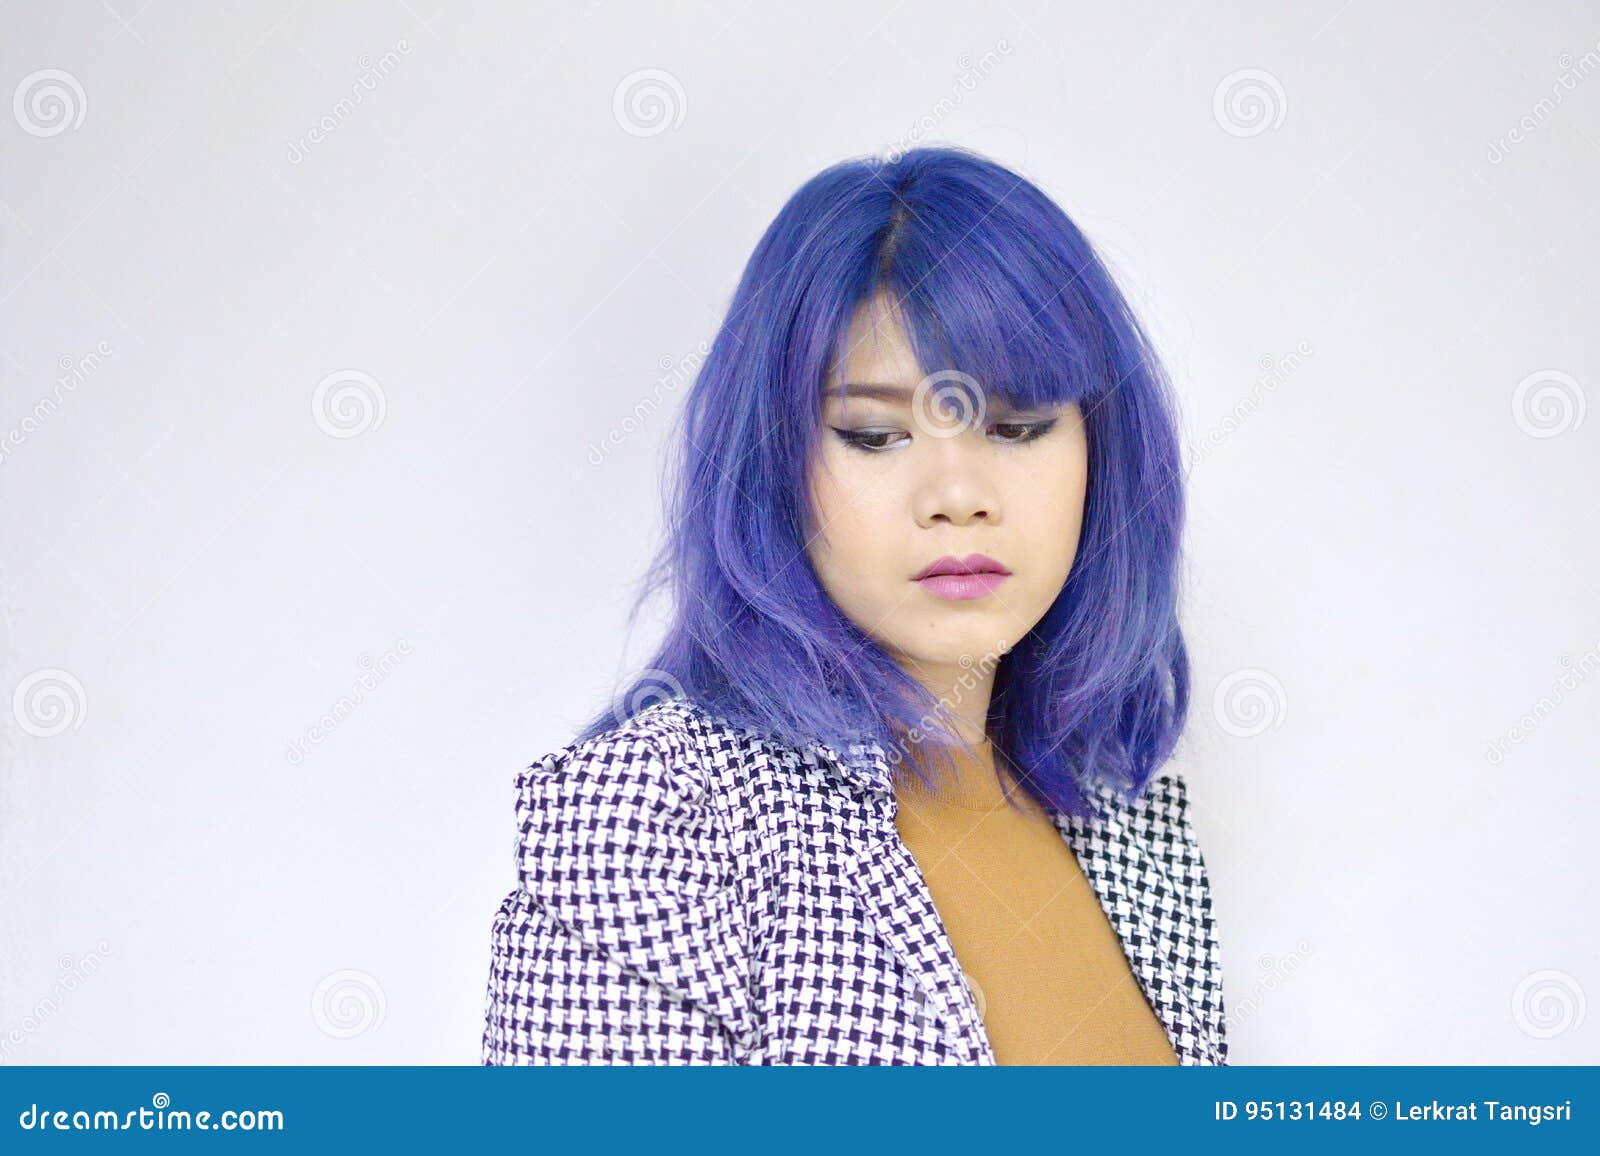 Blue Hair Urban Asian - wide 3